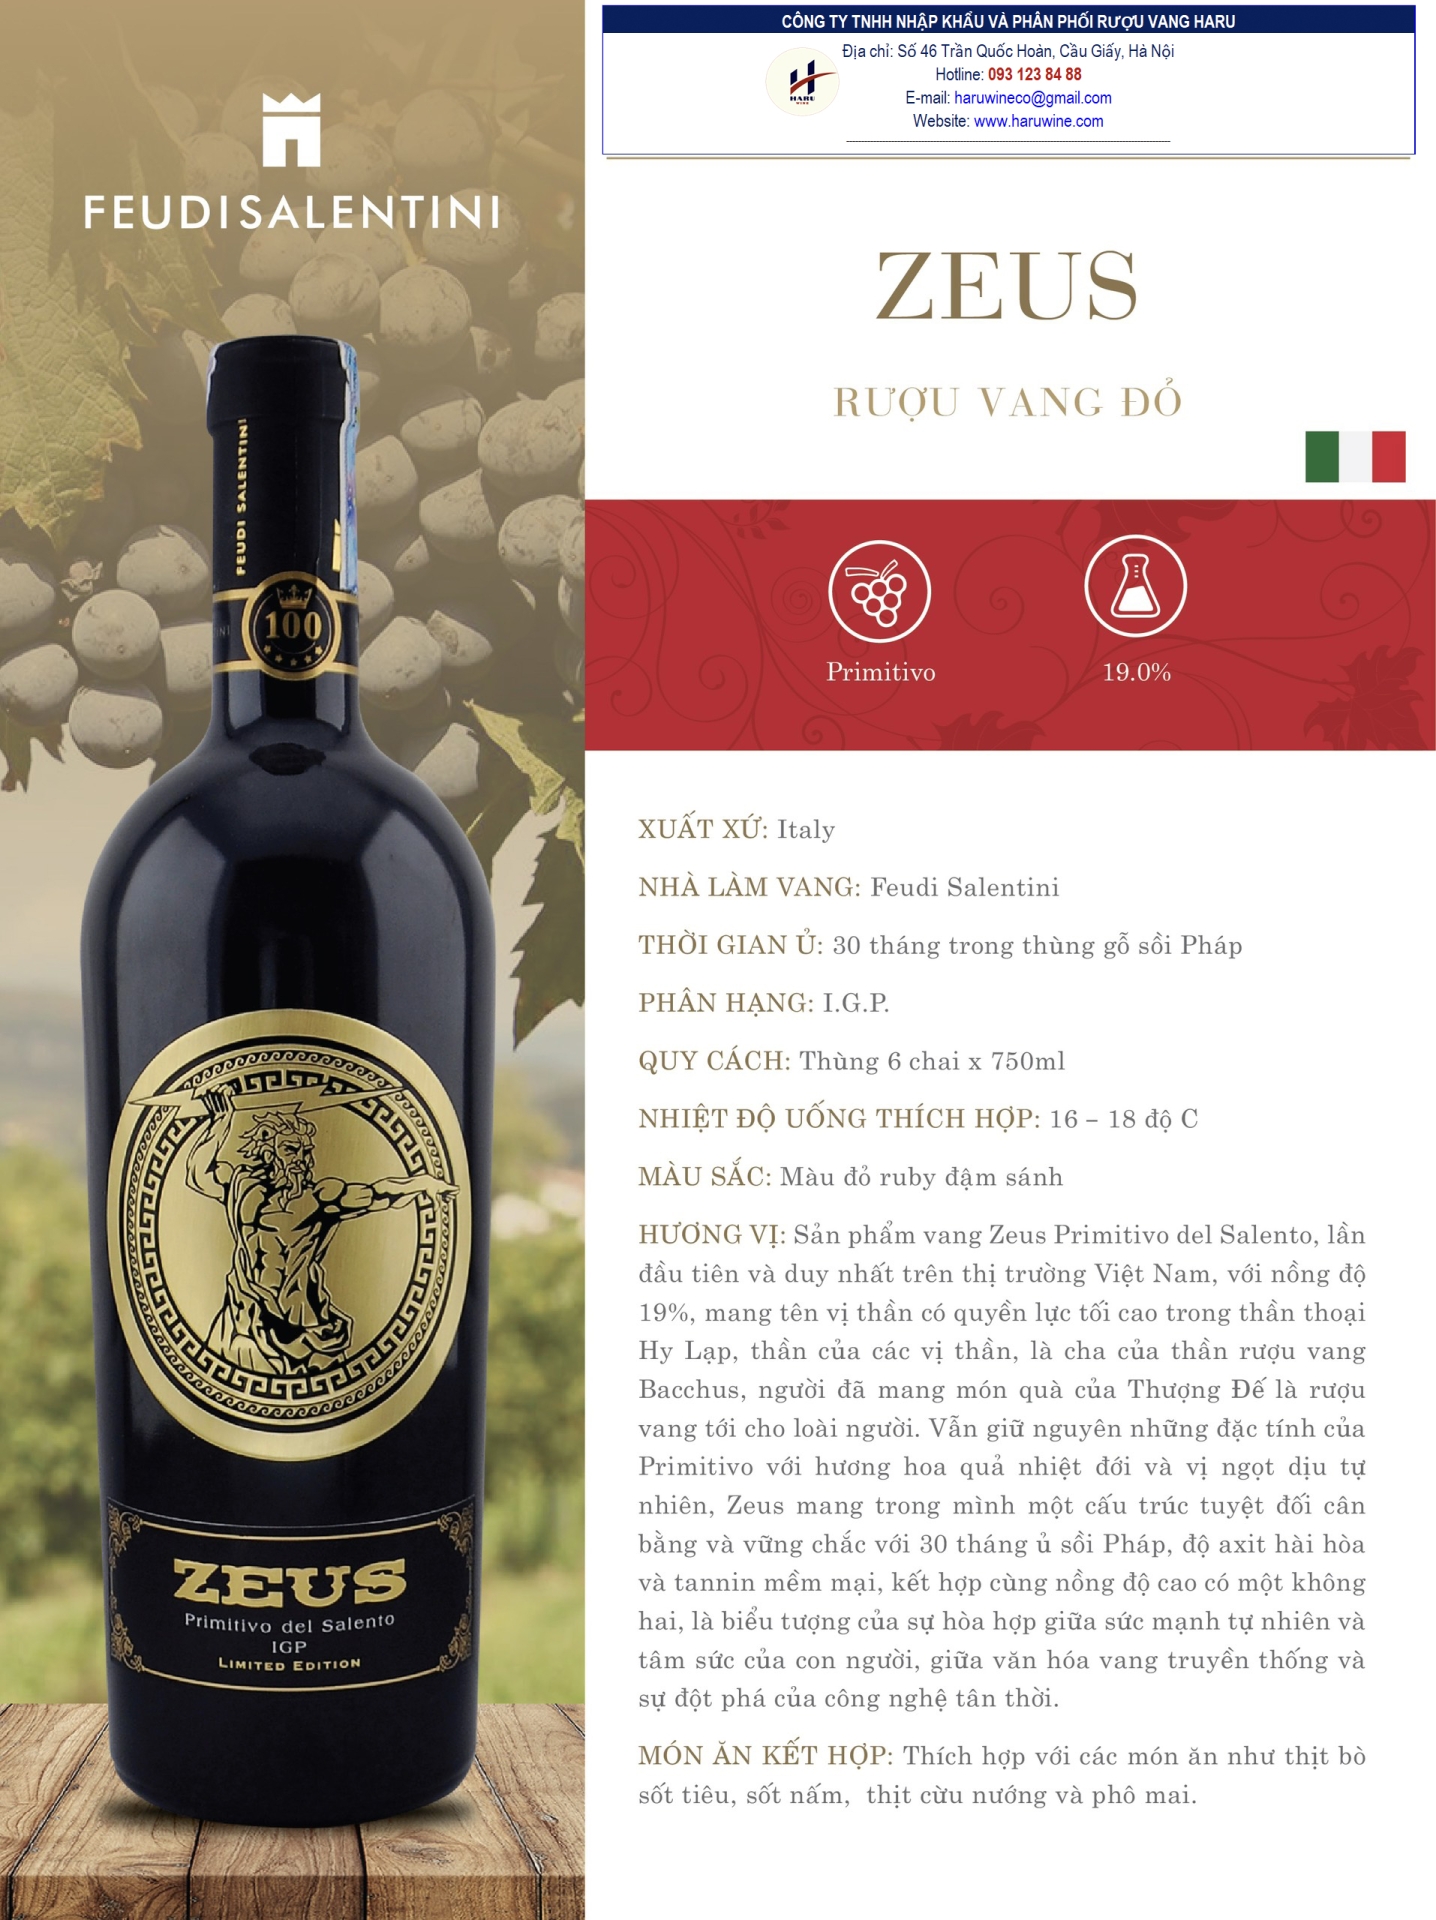 Rượu vang đỏ Zeus